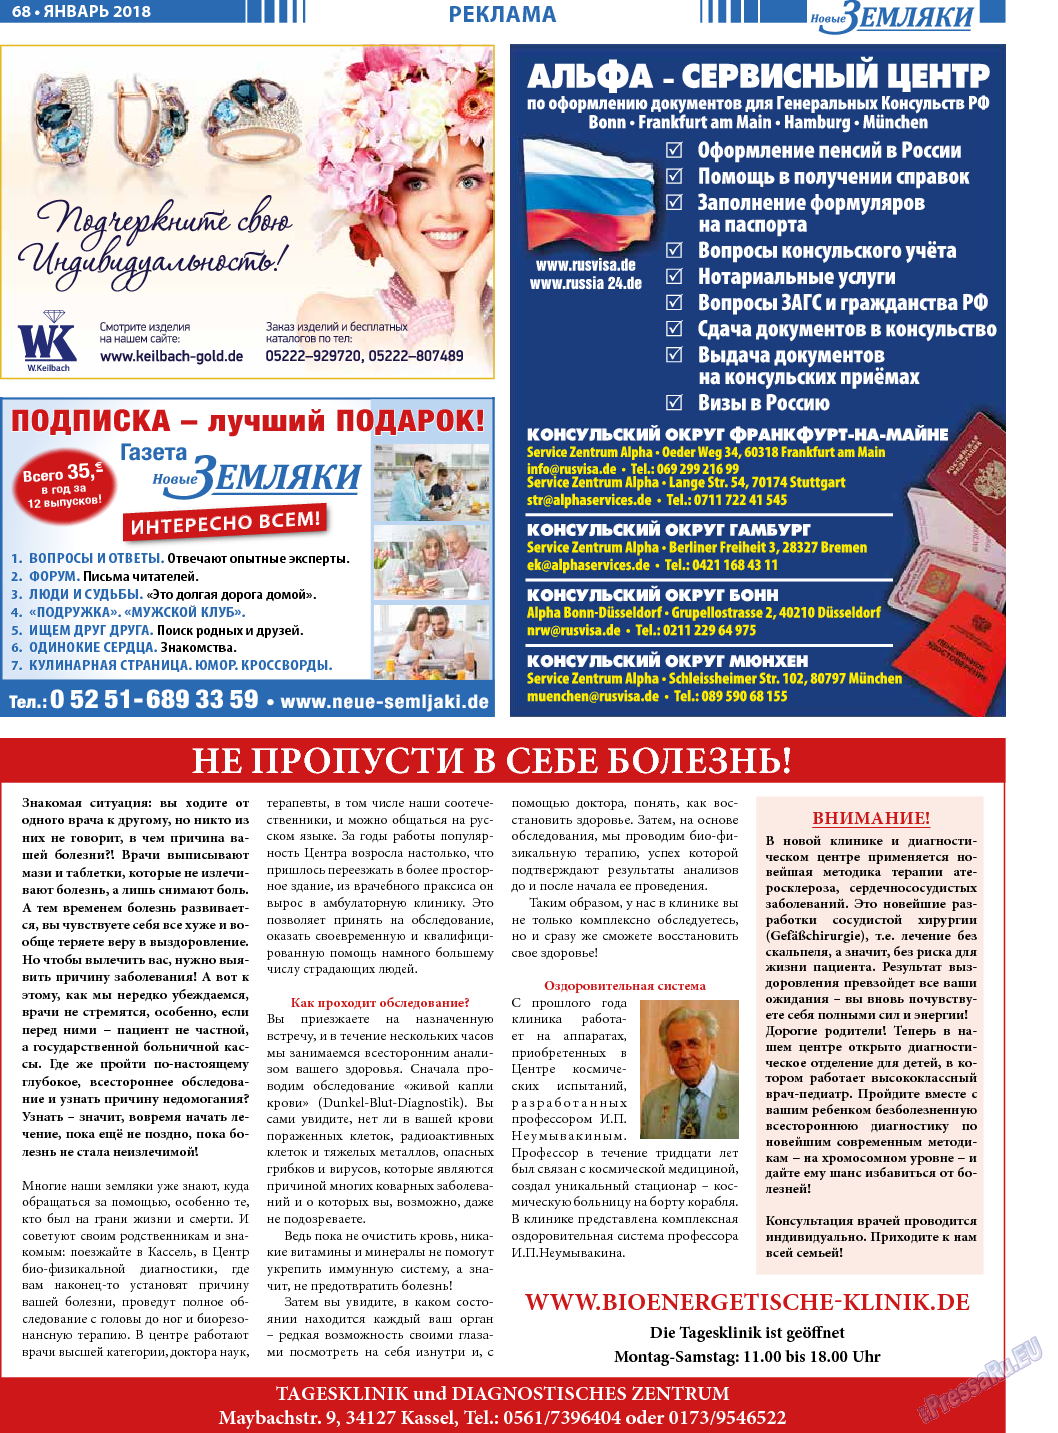 Новые Земляки, газета. 2018 №1 стр.68